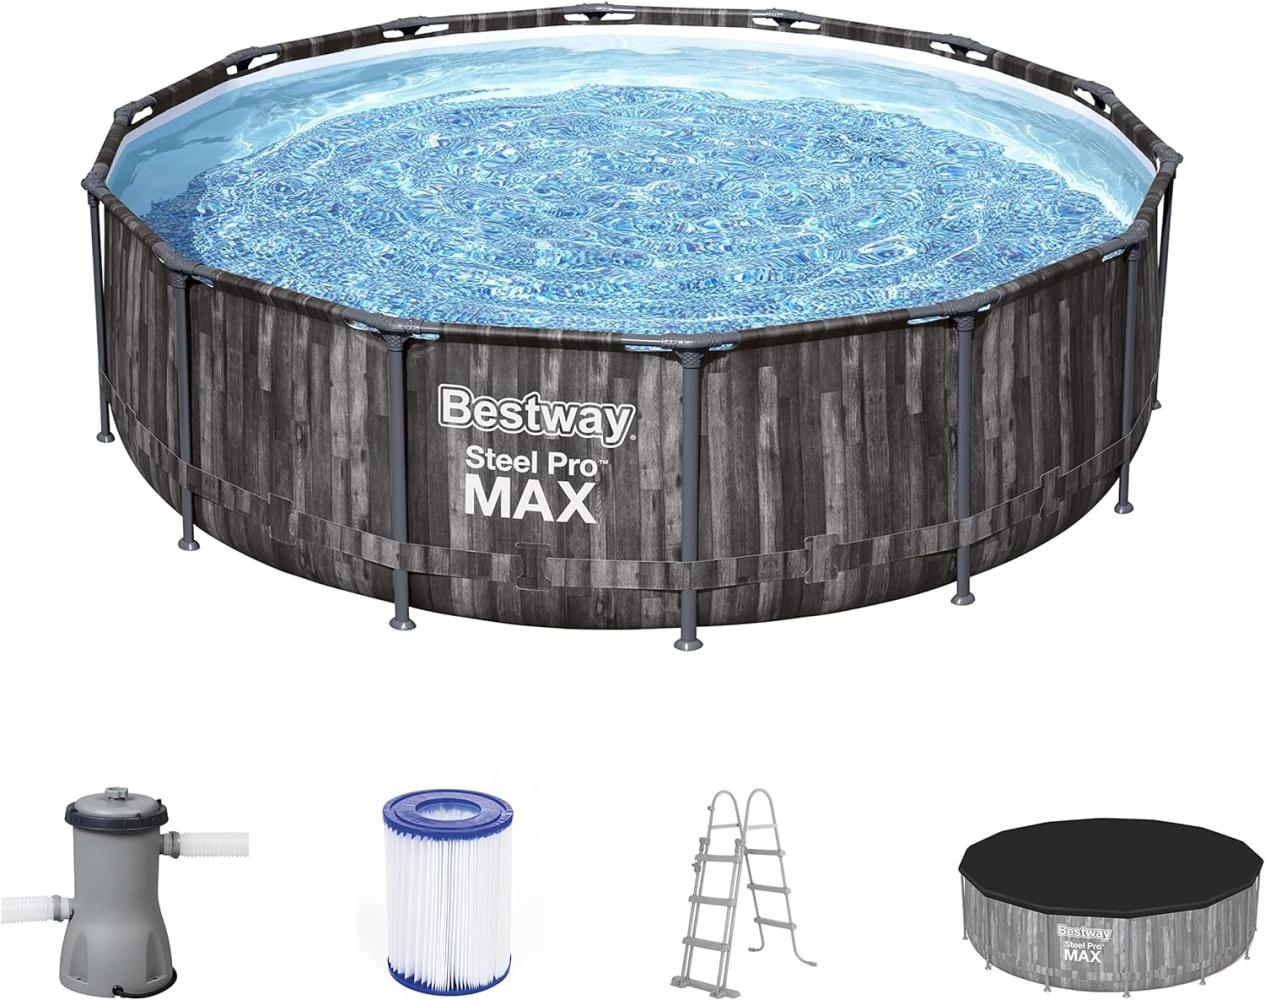 Steel Pro MAX™ Frame Pool Komplett-Set mit Filterpumpe Ø 427 x 107 cm, Holz-Optik (Mooreiche), rund Bild 1